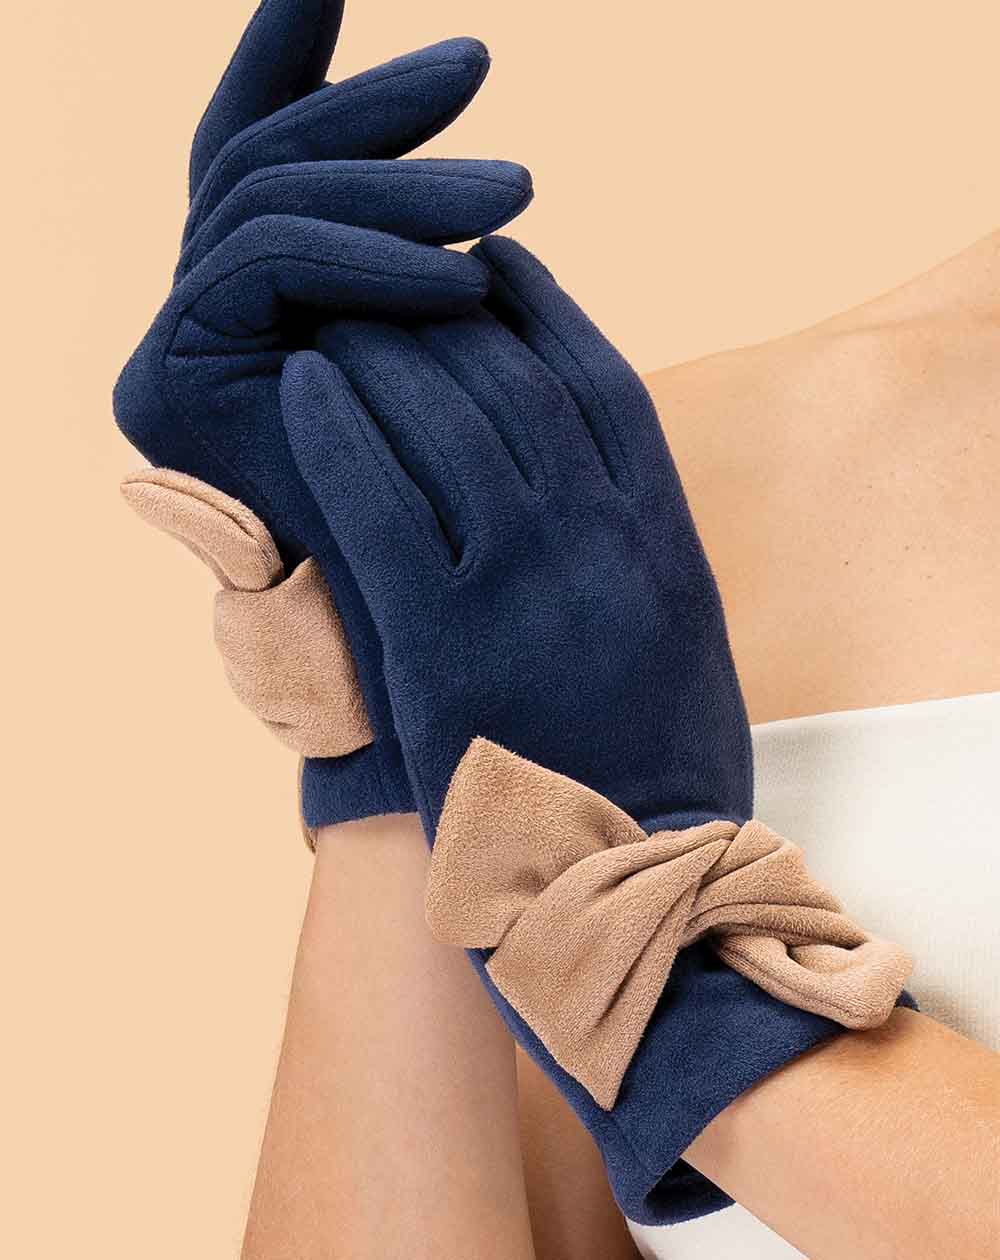 Powder - Henrietta Faux Suede Gloves - Navy/Taupe